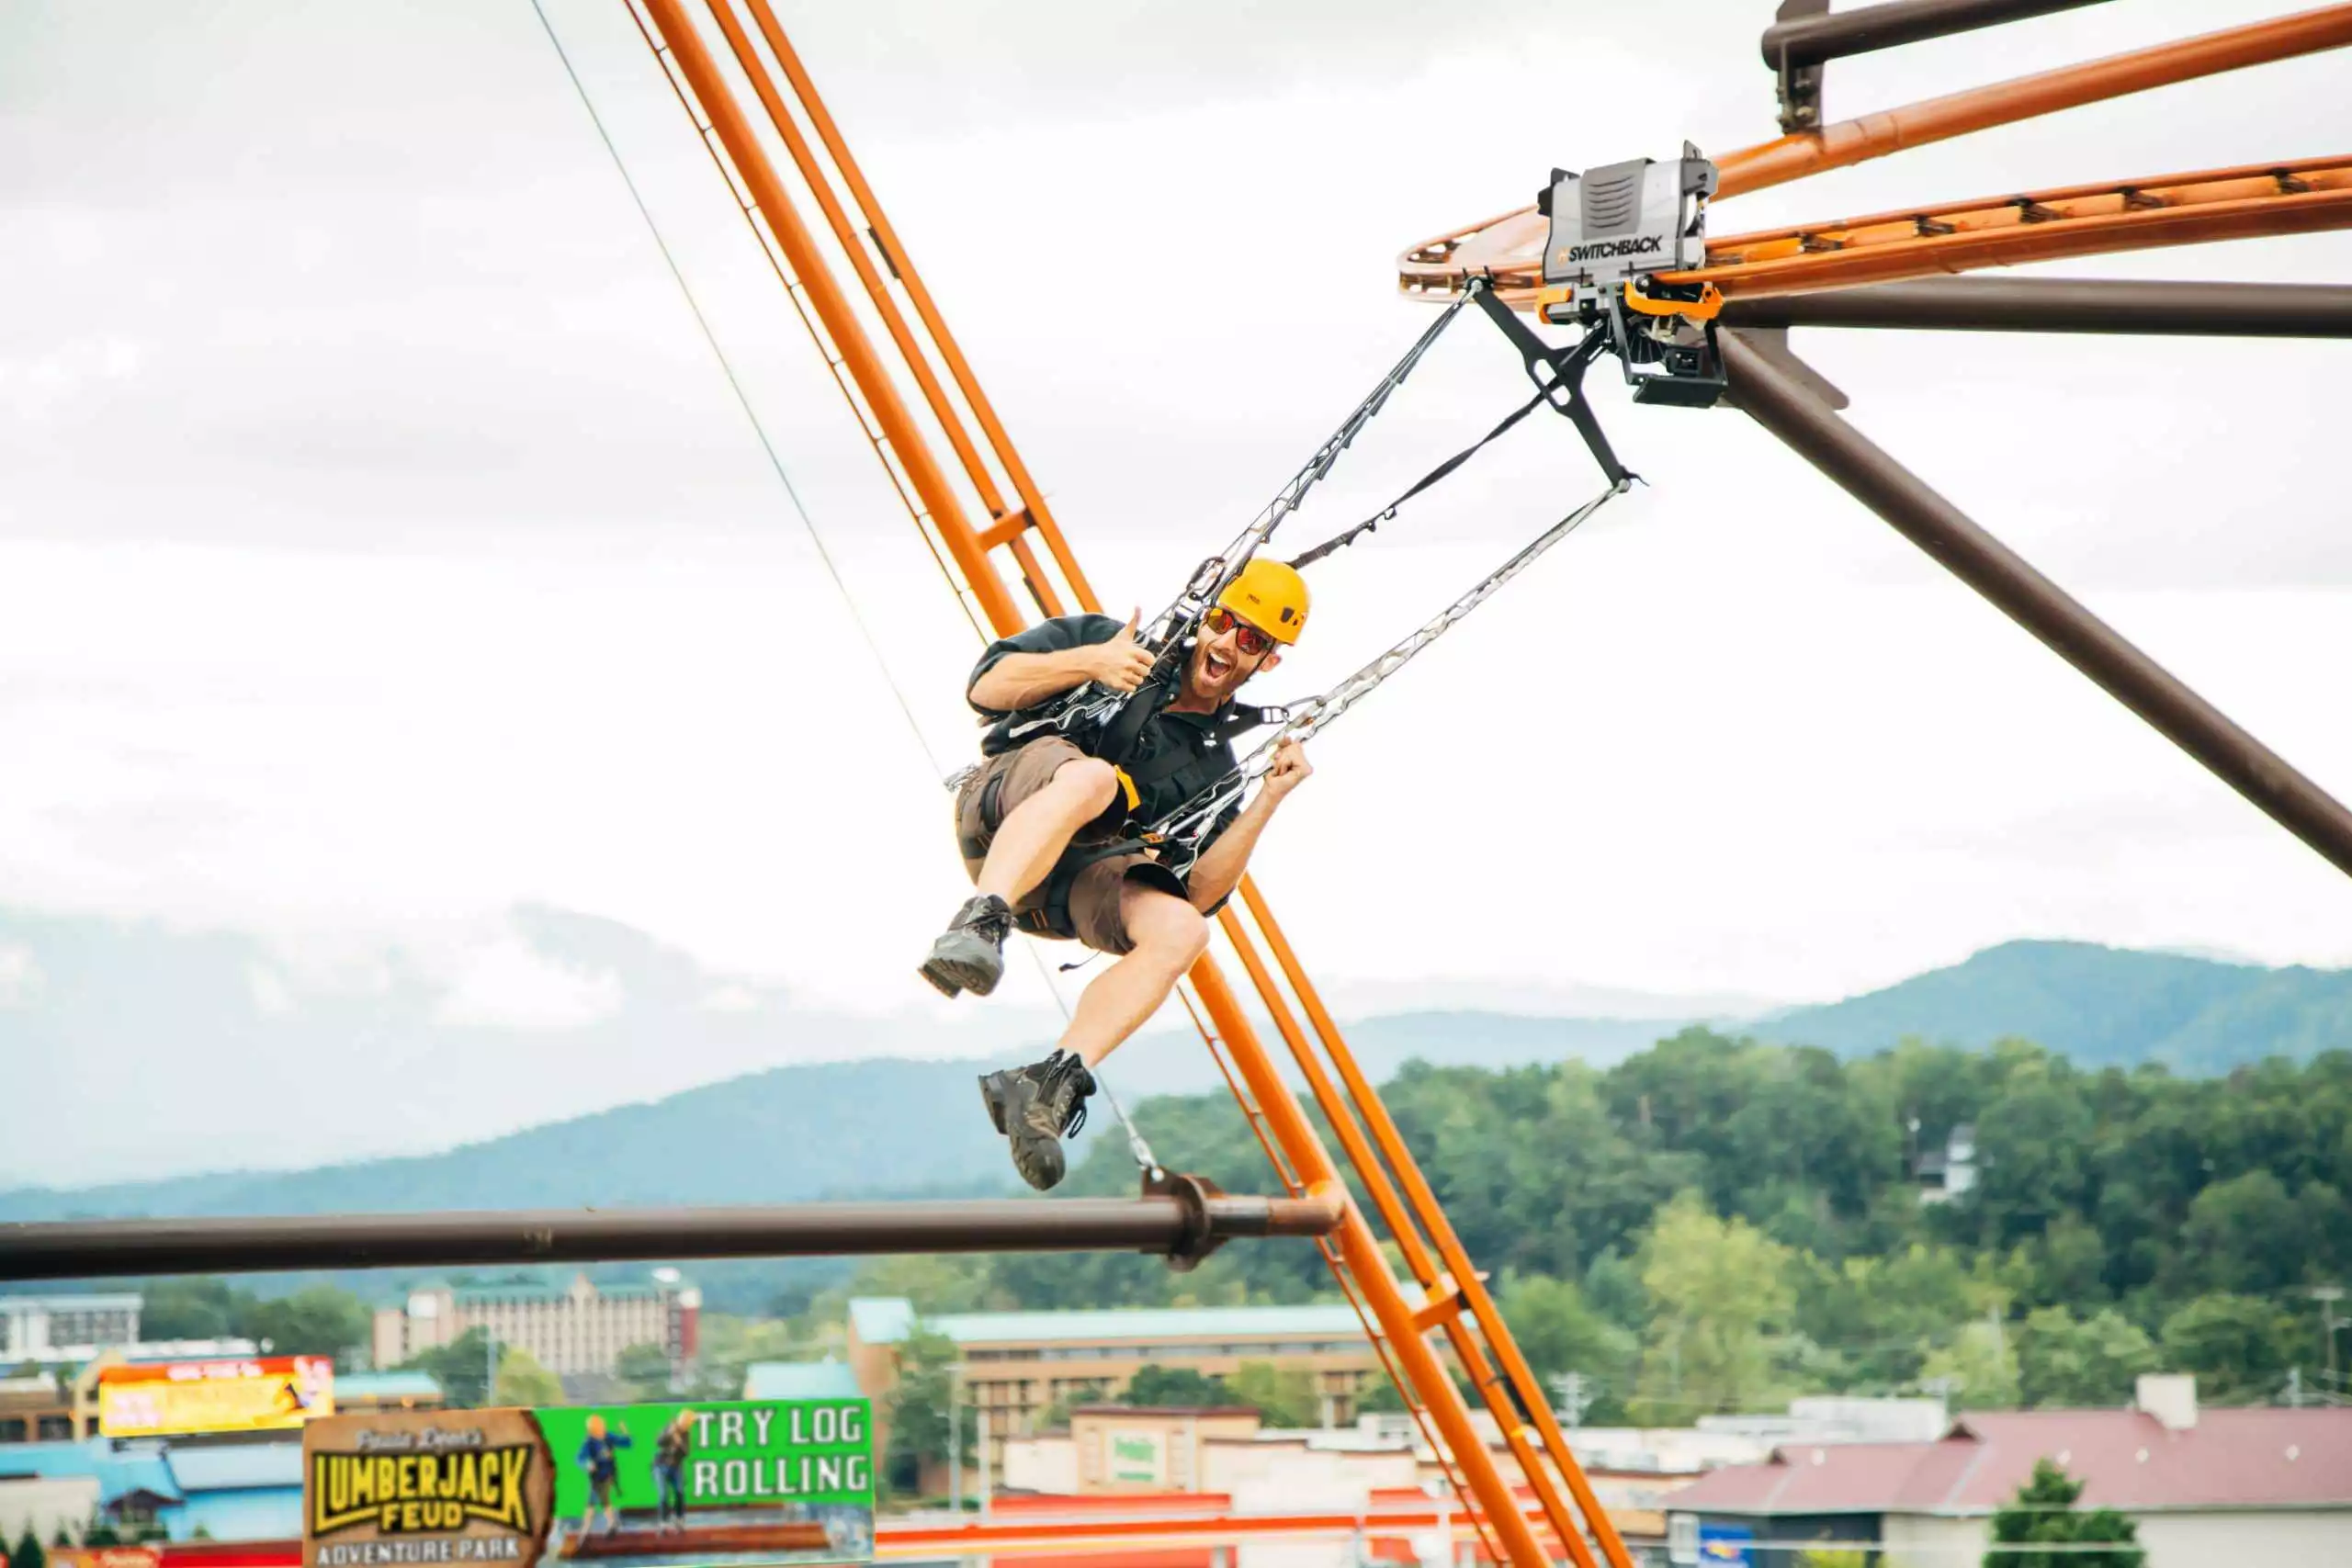 flying ox zipline coaster at lumberjack feud adventure park